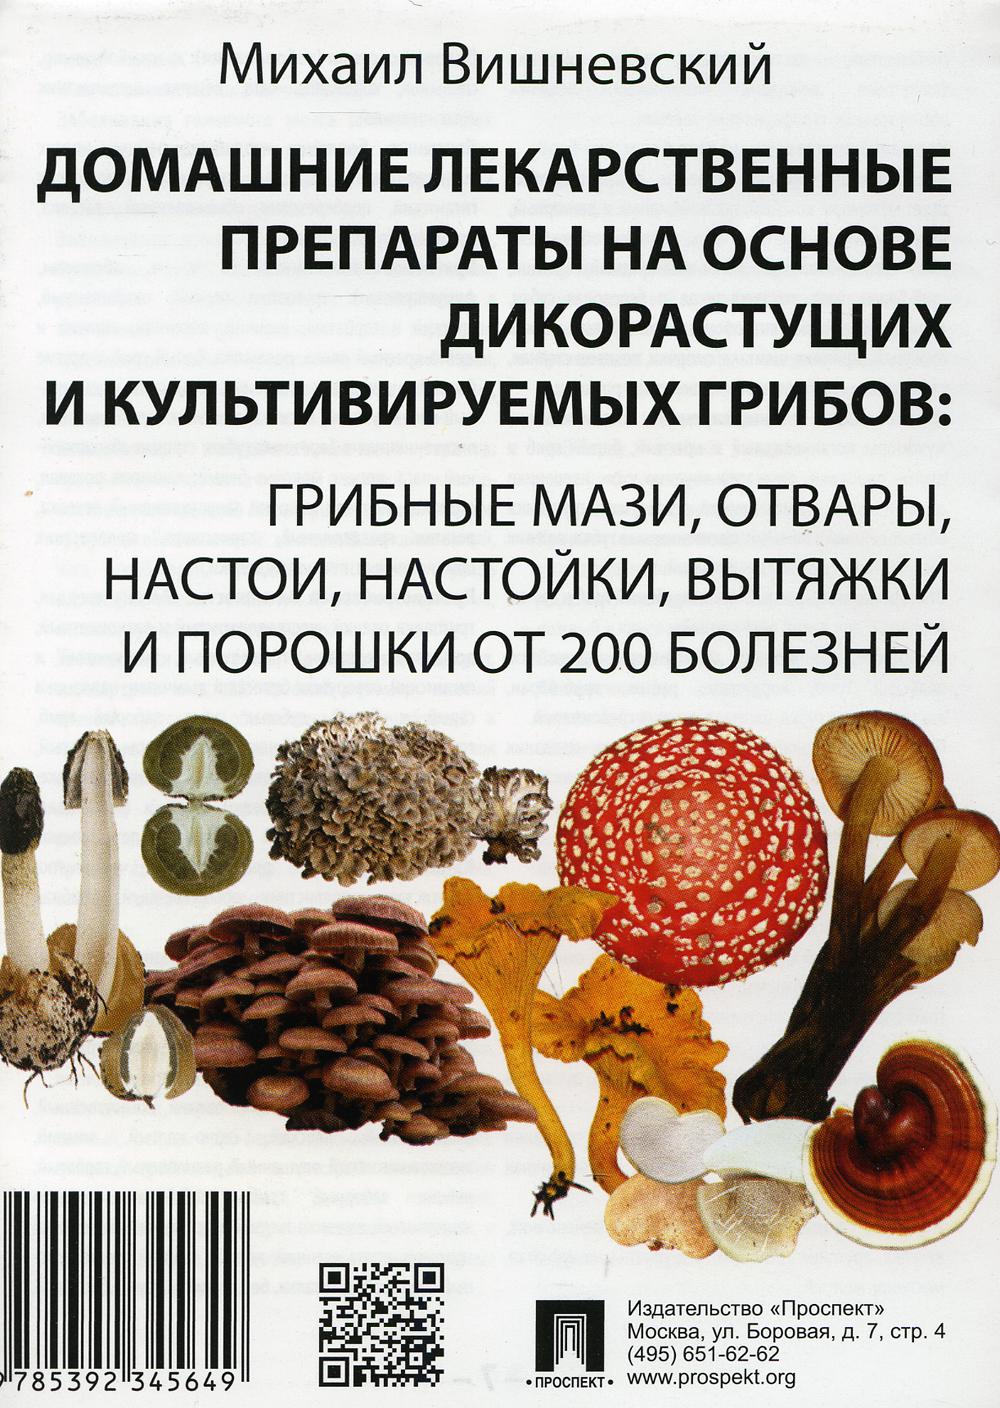 Домашние лекарственные препараты на основе дик-тущих и культивируемых грибов: гриб. мази, отвары, настои, настойки, вытяжки и порошки от 200 болезней